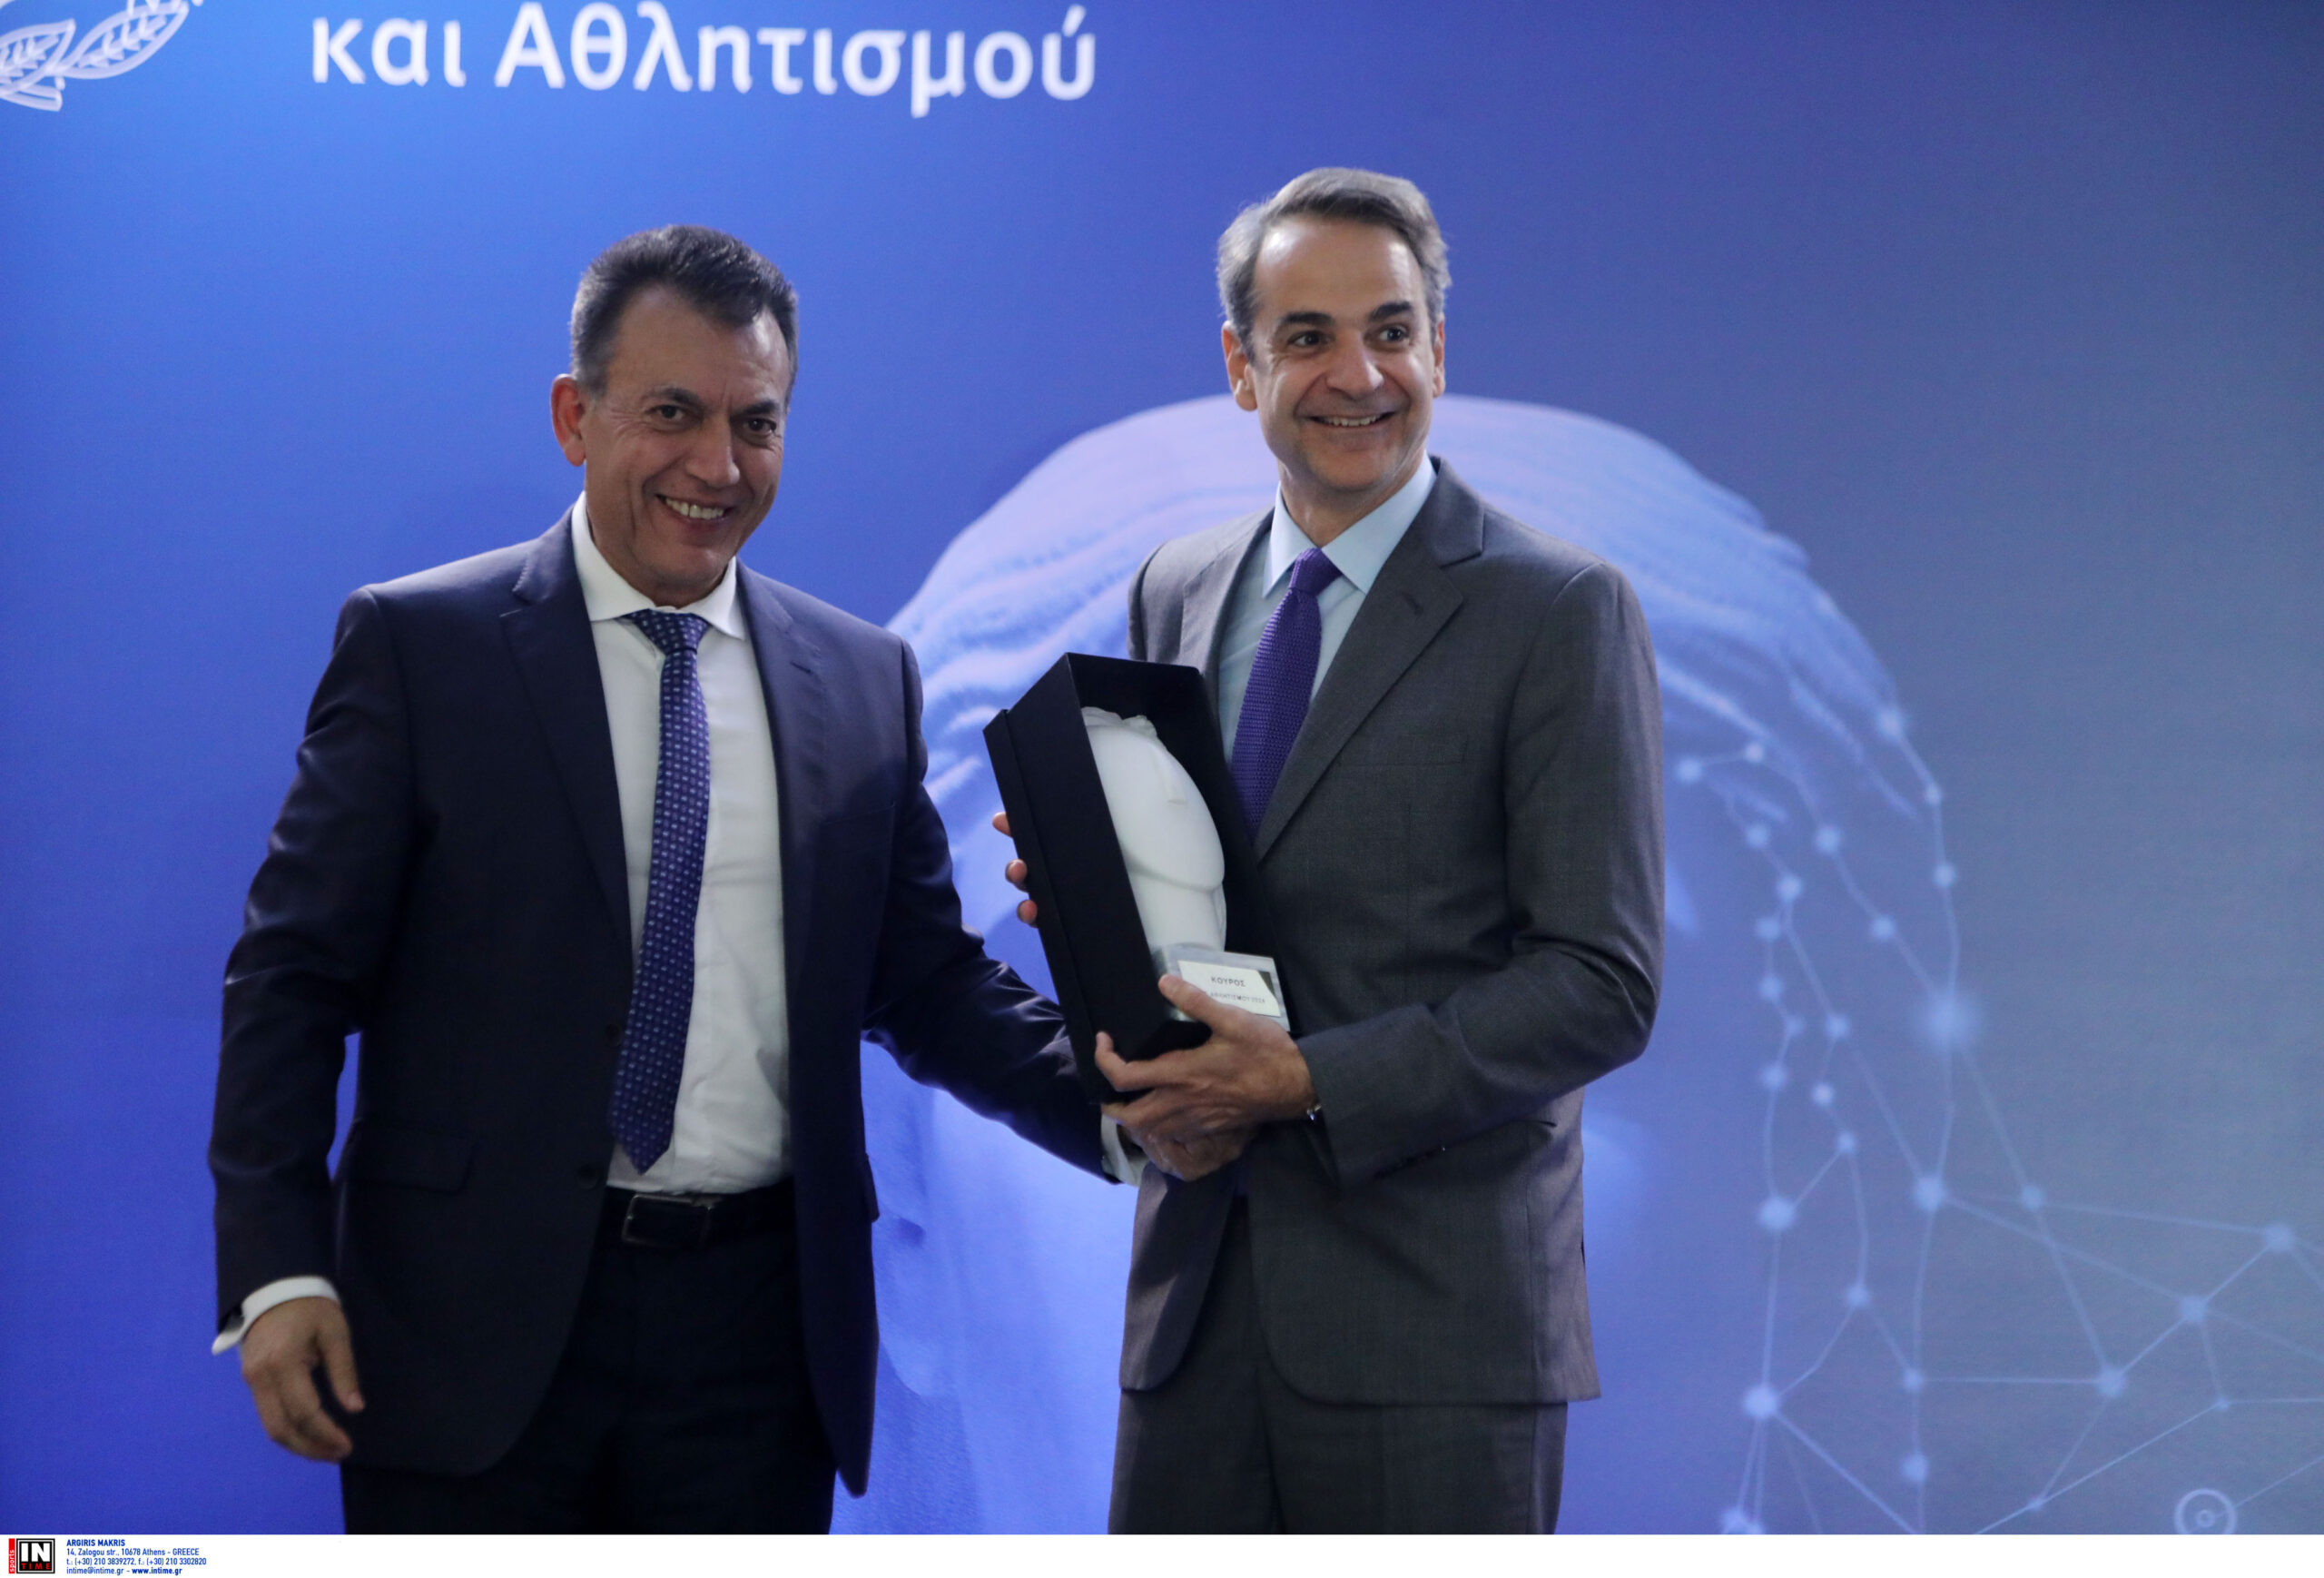 Η έκδοση επετειακών νομισμάτων για τα 20 χρόνια από τη διοργάνωση του «Αθήνα 2004» και την κατάκτηση του Euro από την Εθνική Ομάδα Ποδοσφαίρου, ανακοινώθηκε στην κοπή της πίτας του Αθλητισμού, παρουσία του Πρωθυπουργού